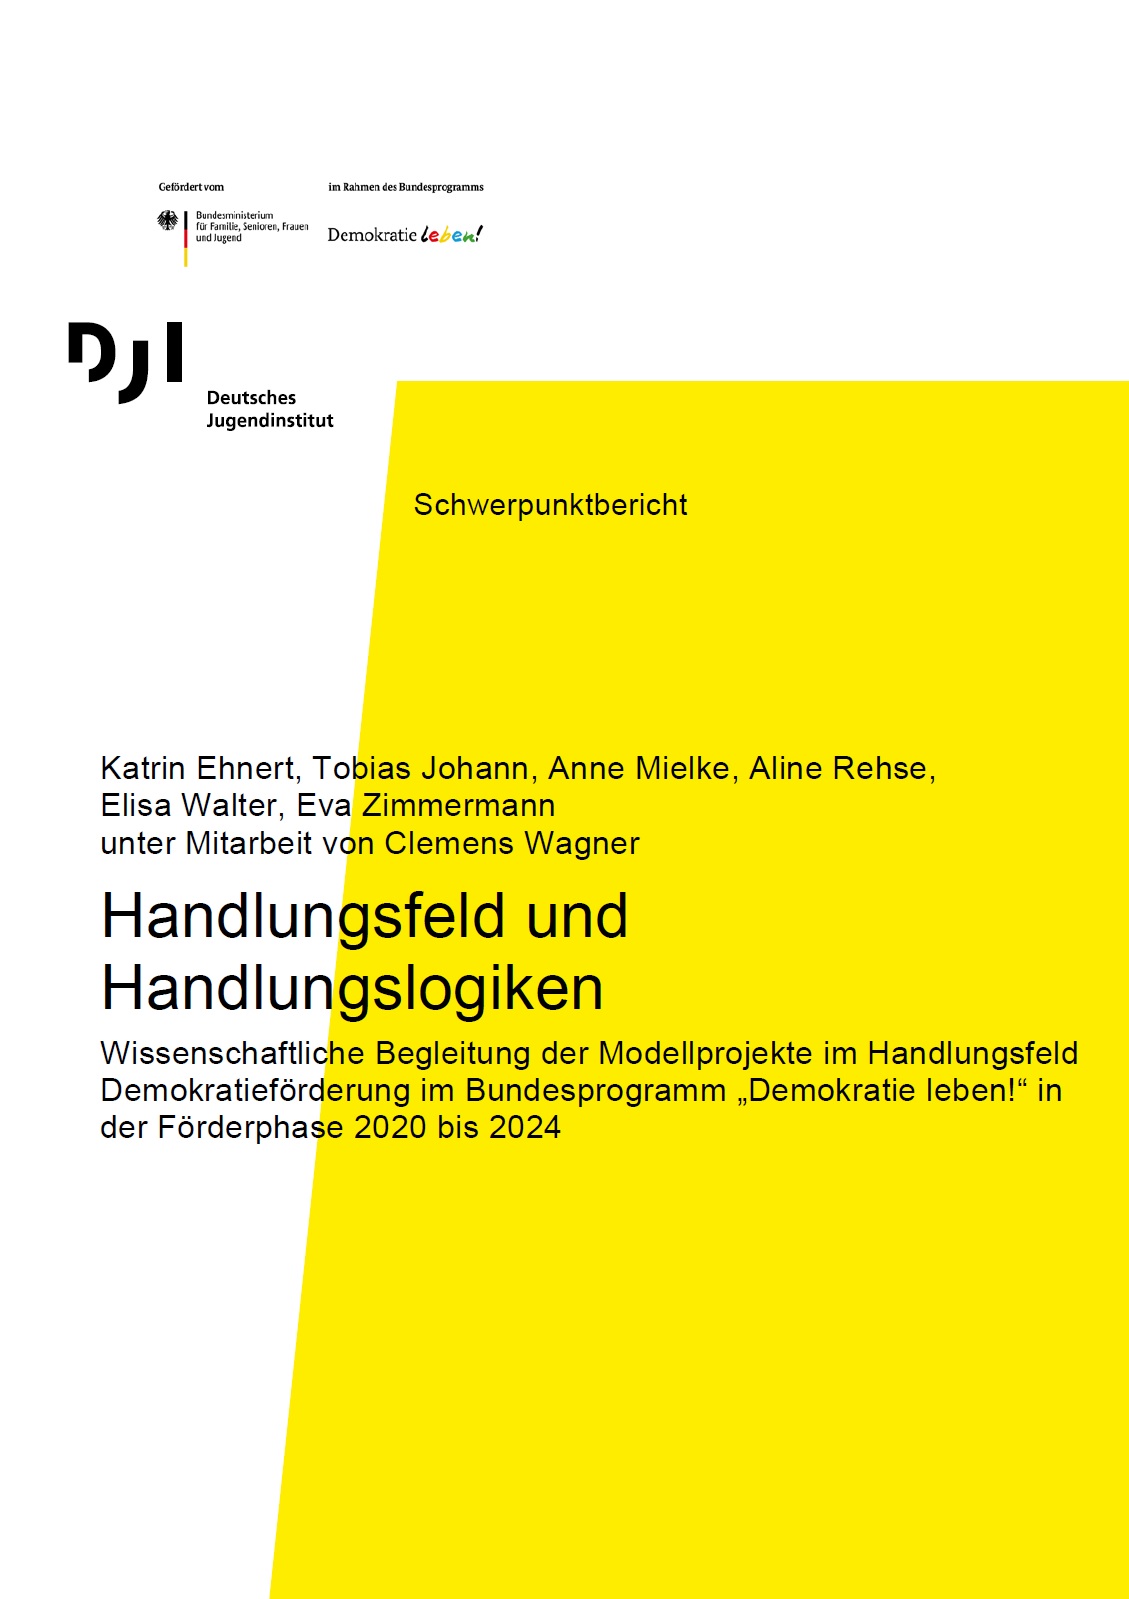 Das Bild zeigt einen weiß, gelben Hintergrund auf denen der Titel Handlungsfeld und Handlungslogiken, viele Autor:innen und die Logos des Herausgebers Deutsches Jugendinstitut und des Förderers Demokratie leben abgebildet sind